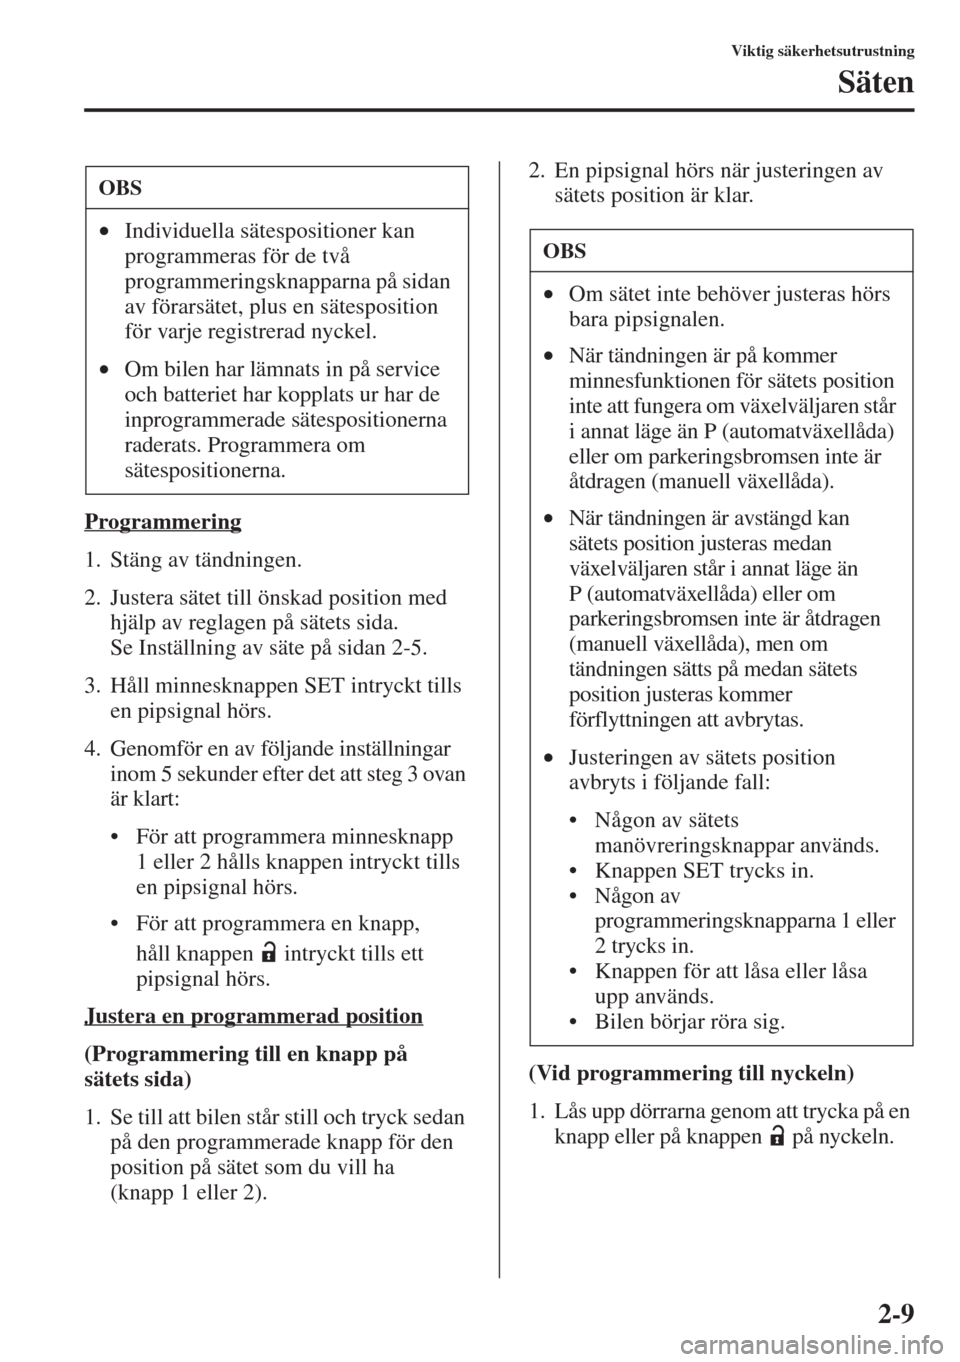 MAZDA MODEL 6 2015  Ägarmanual (in Swedish) 2-9
Viktig säkerhetsutrustning
Säten
Programmering
1. Stäng av tändningen.
2. Justera sätet till önskad position med 
hjälp av reglagen på sätets sida. 
Se Inställning av säte på sidan 2-5